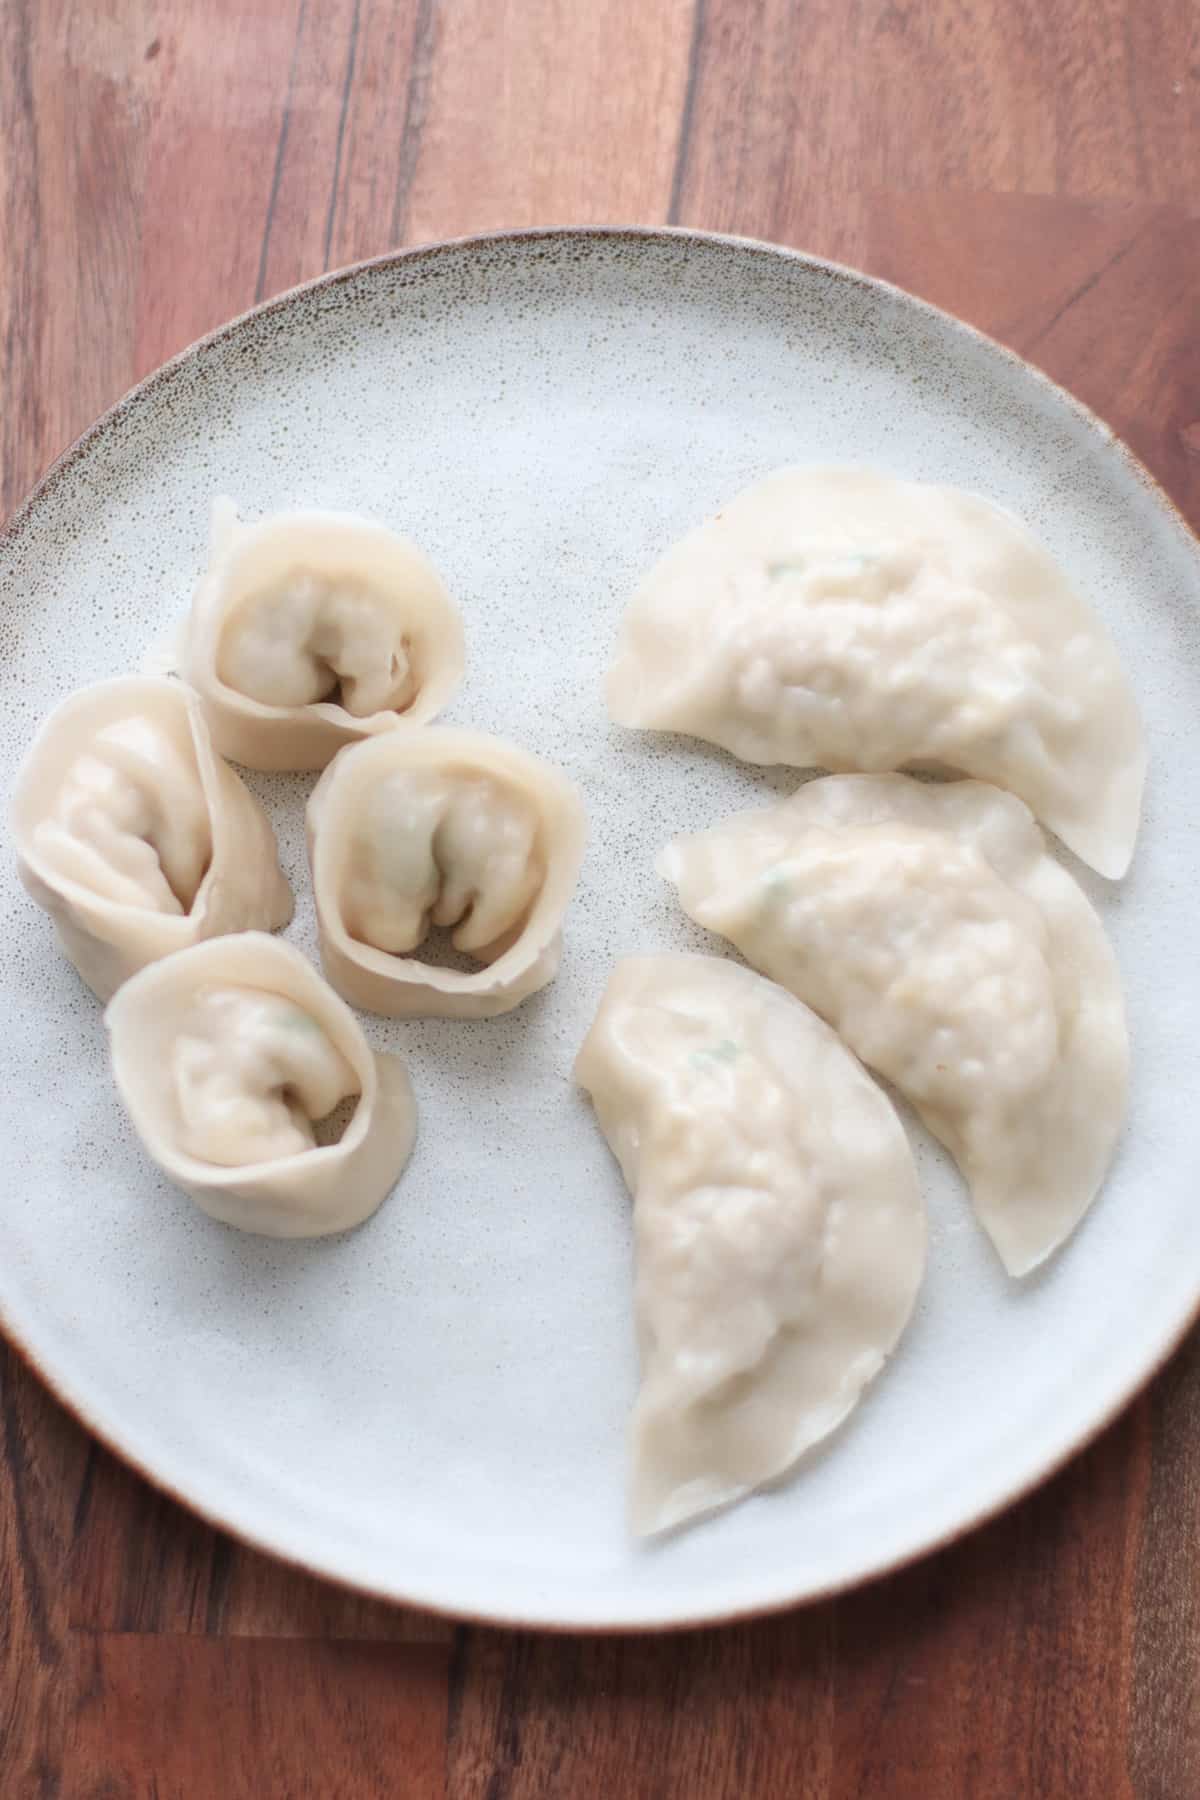 Steamed dumplings on a plate.